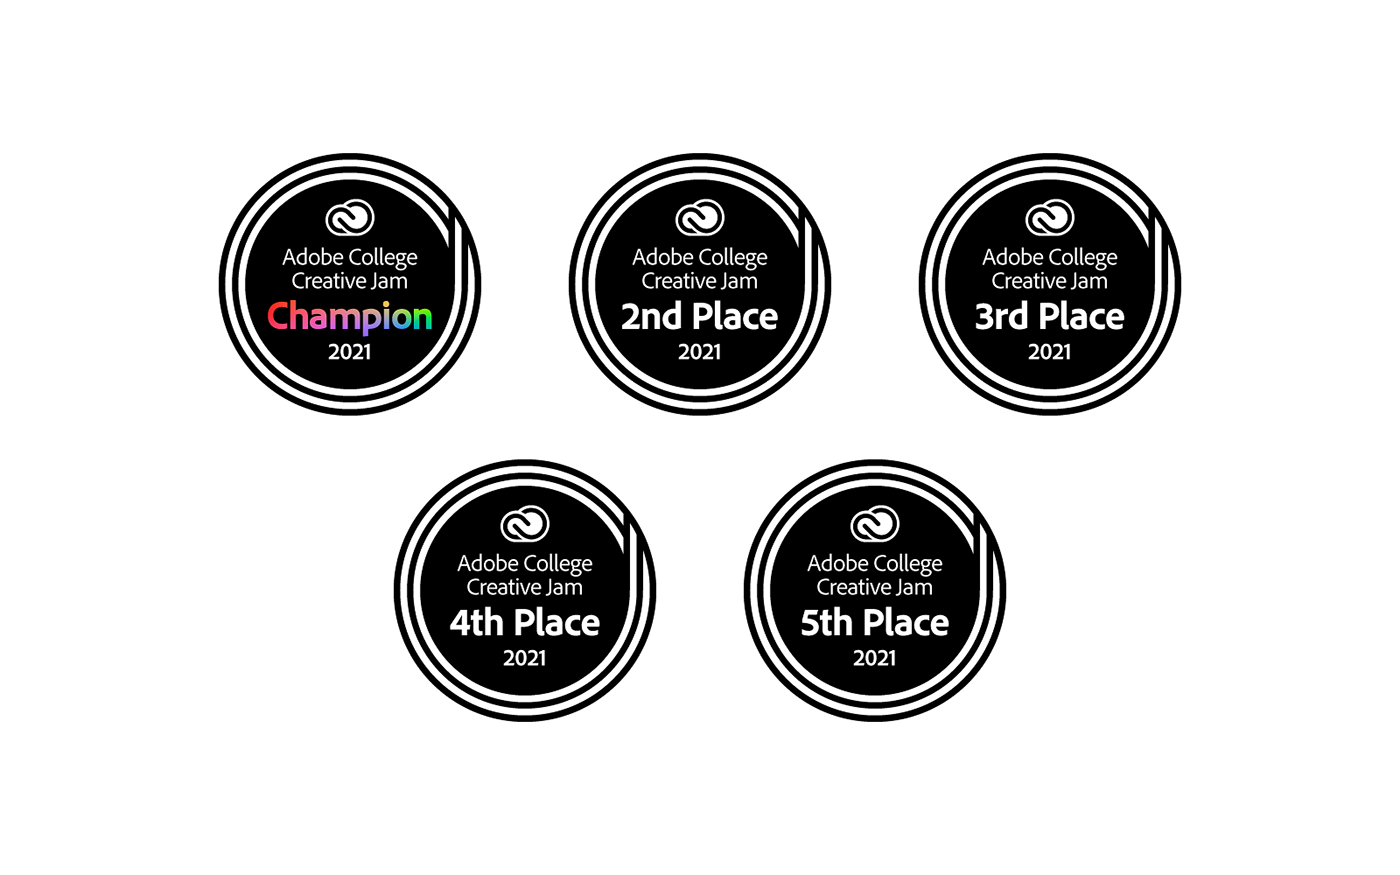 adobe adoberesidency award badge circle creativejam graphic design  logo Logo Design logodesign